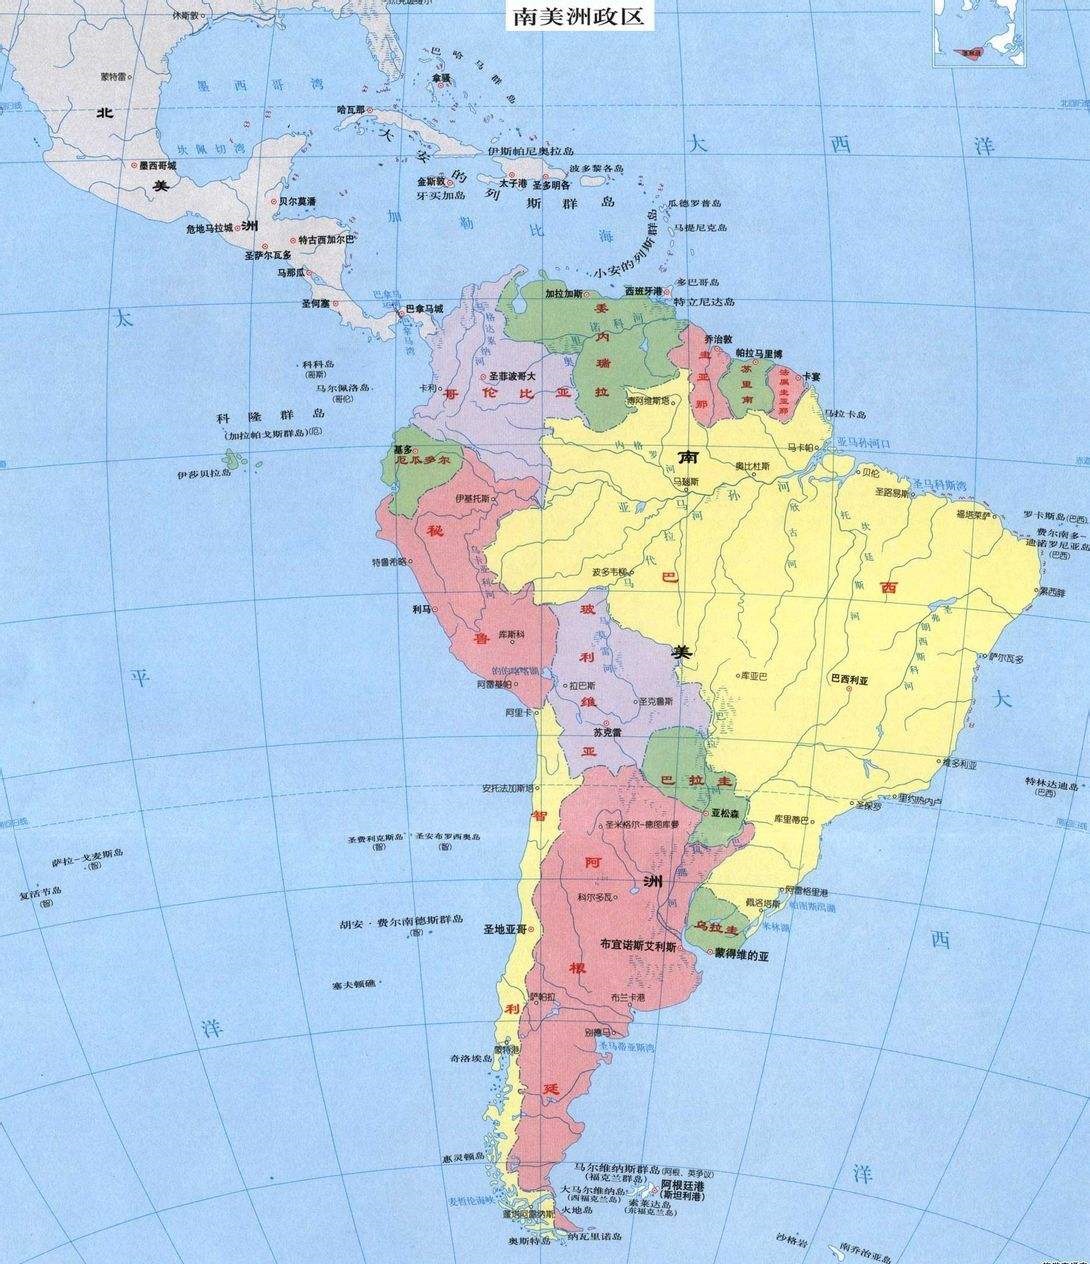 北美和南美(美洲的区域划分：北美、北美洲、中美洲、南美洲和拉丁美洲的关系)